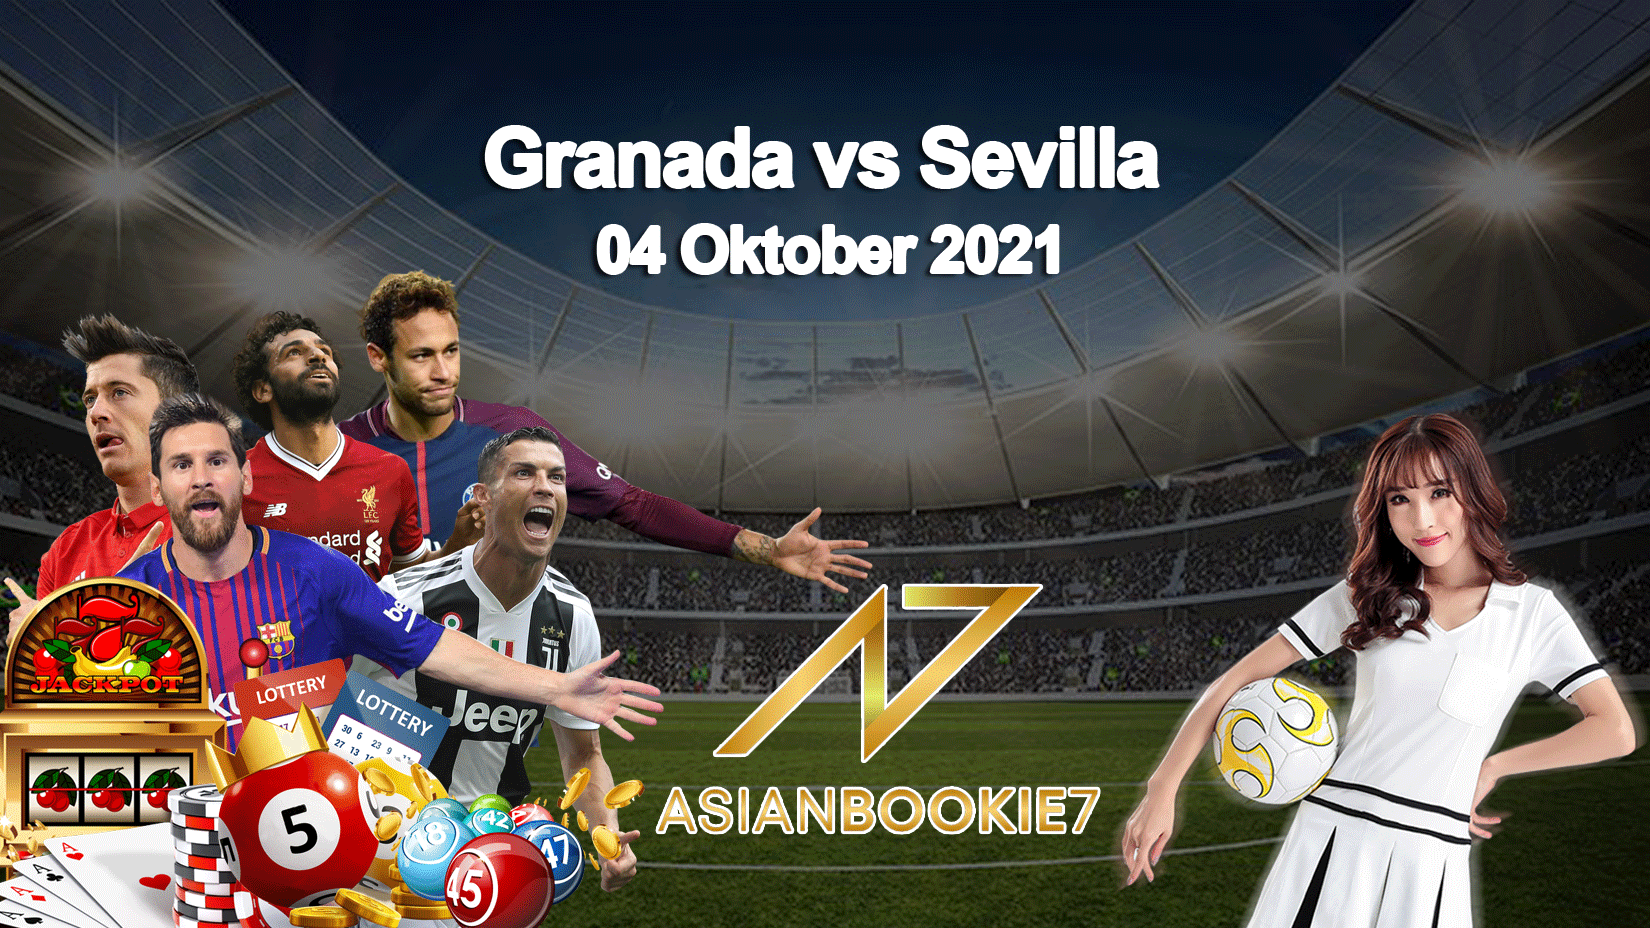 Prediksi Granada vs Sevilla 04 Oktober 2021